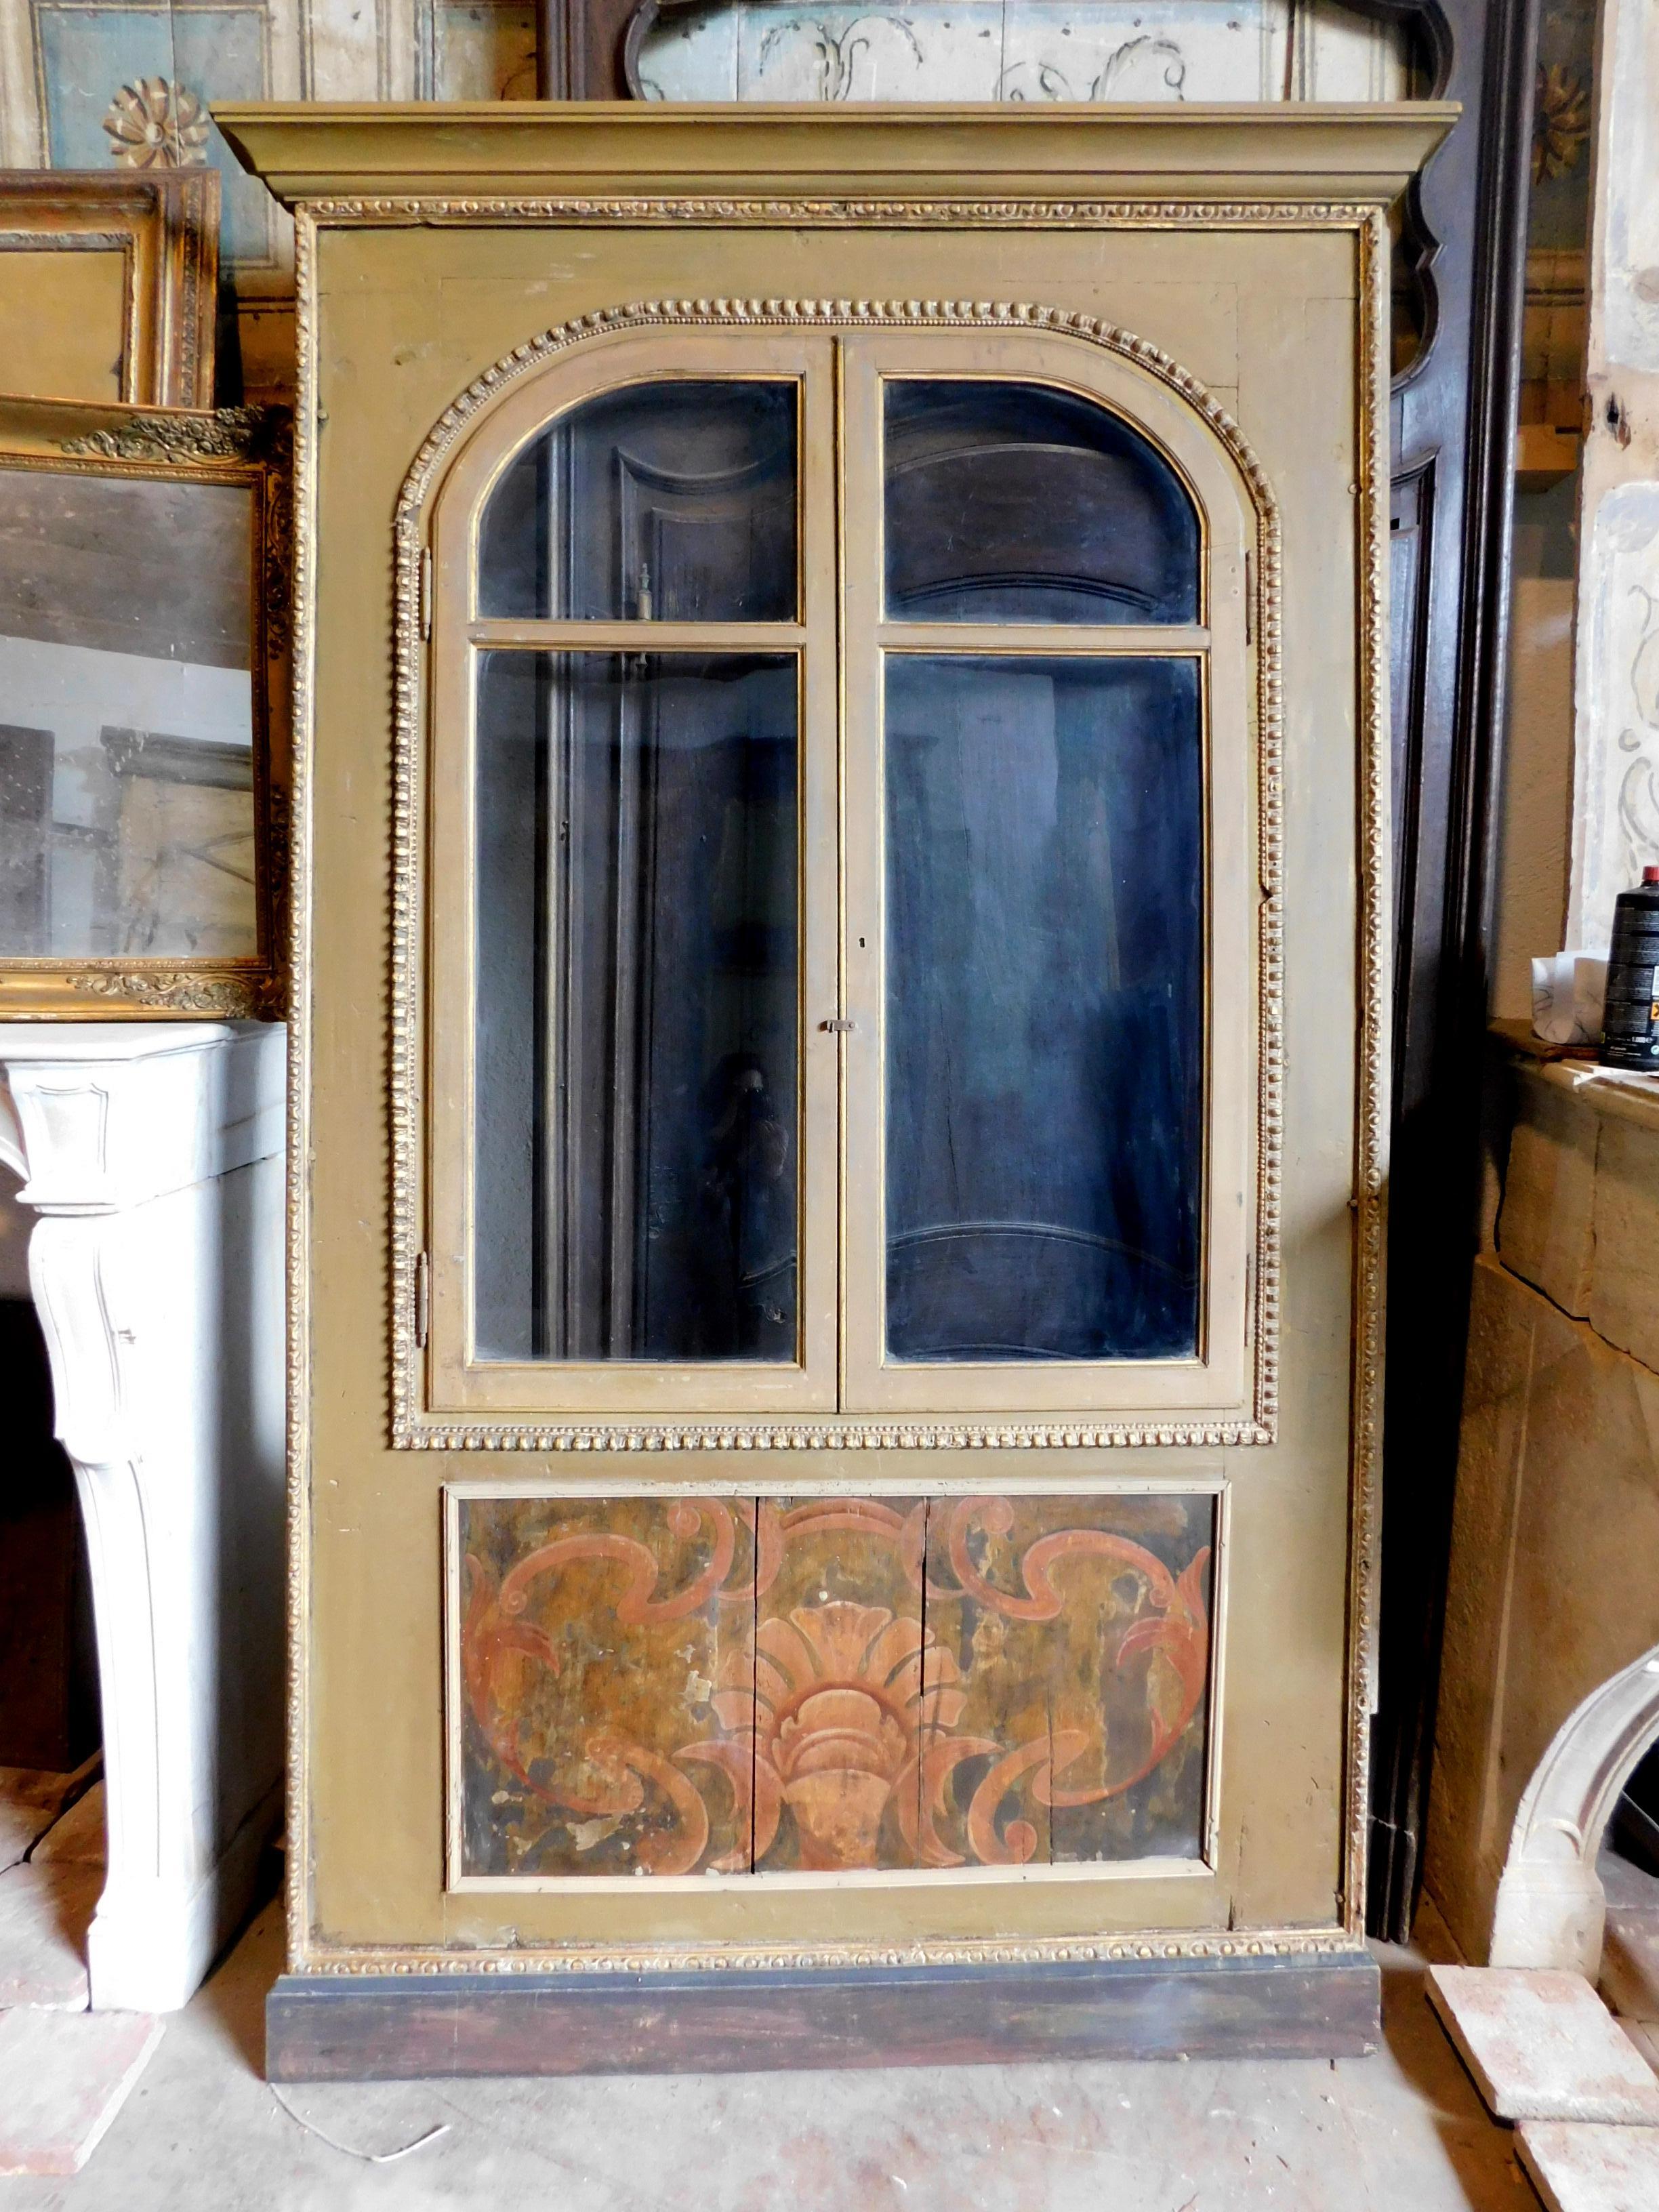 Antikes Plakat, Einbauschrank, Schrankfront in der Wand, aus Massivholz, geschnitzt und lackiert mit Glastüren im oberen Teil und bemalter Platte als Sockel, handgefertigt und handbemalt in der Mitte des 19. Jahrhunderts in Italien.
Der obere Teil